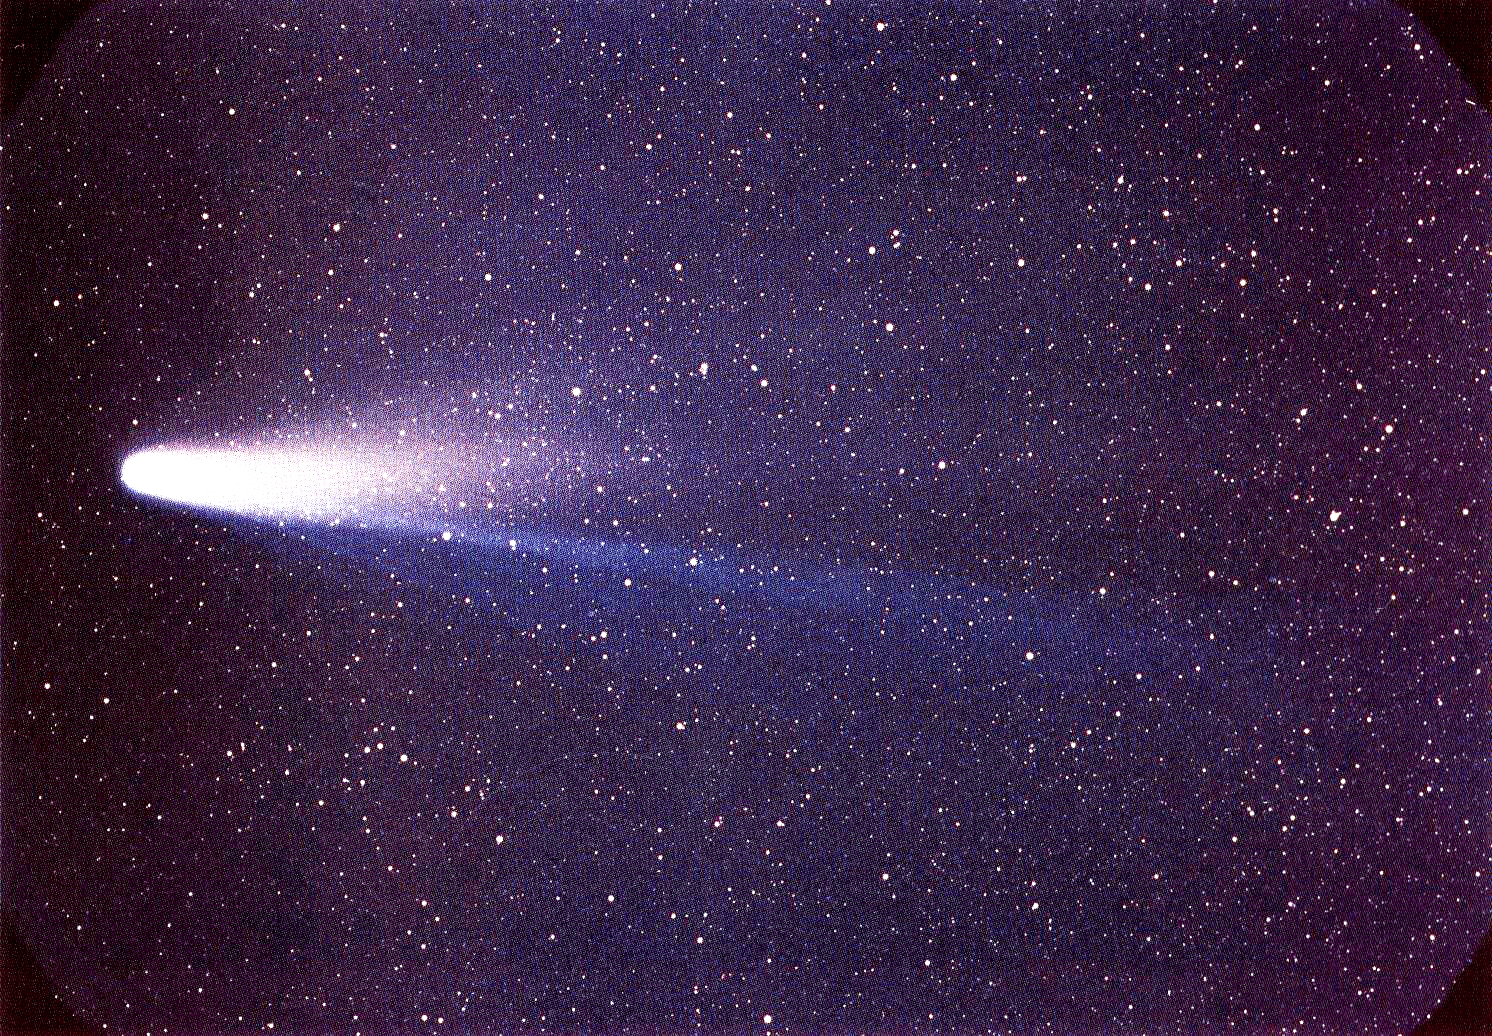 837. godine - Halleyjev komet, prvi komet koji je prepoznat kao stalan član Sunčeva sustava, bio je najbliže Zemlji ikad. Znanstvenici tvrde da mu se tada rep protegnuo preko polovice neba.